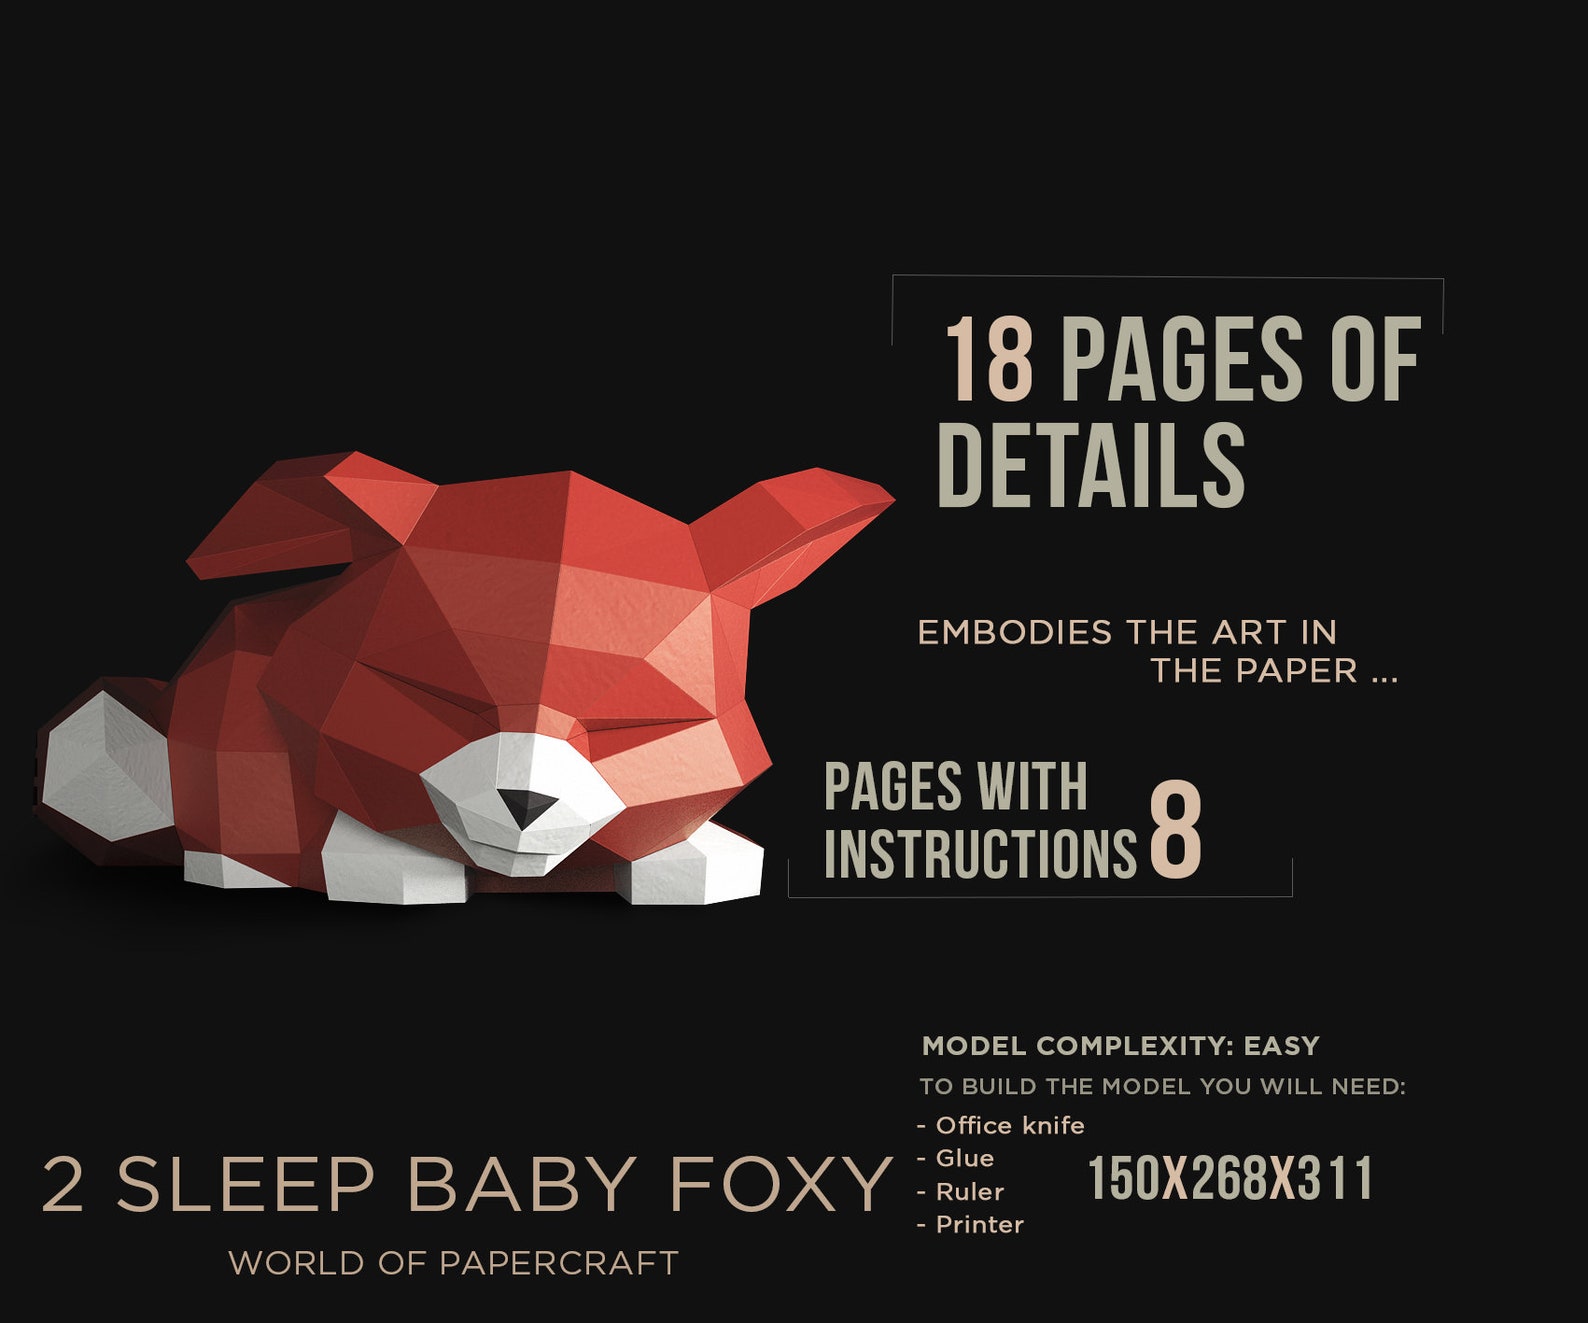 Fox pdf